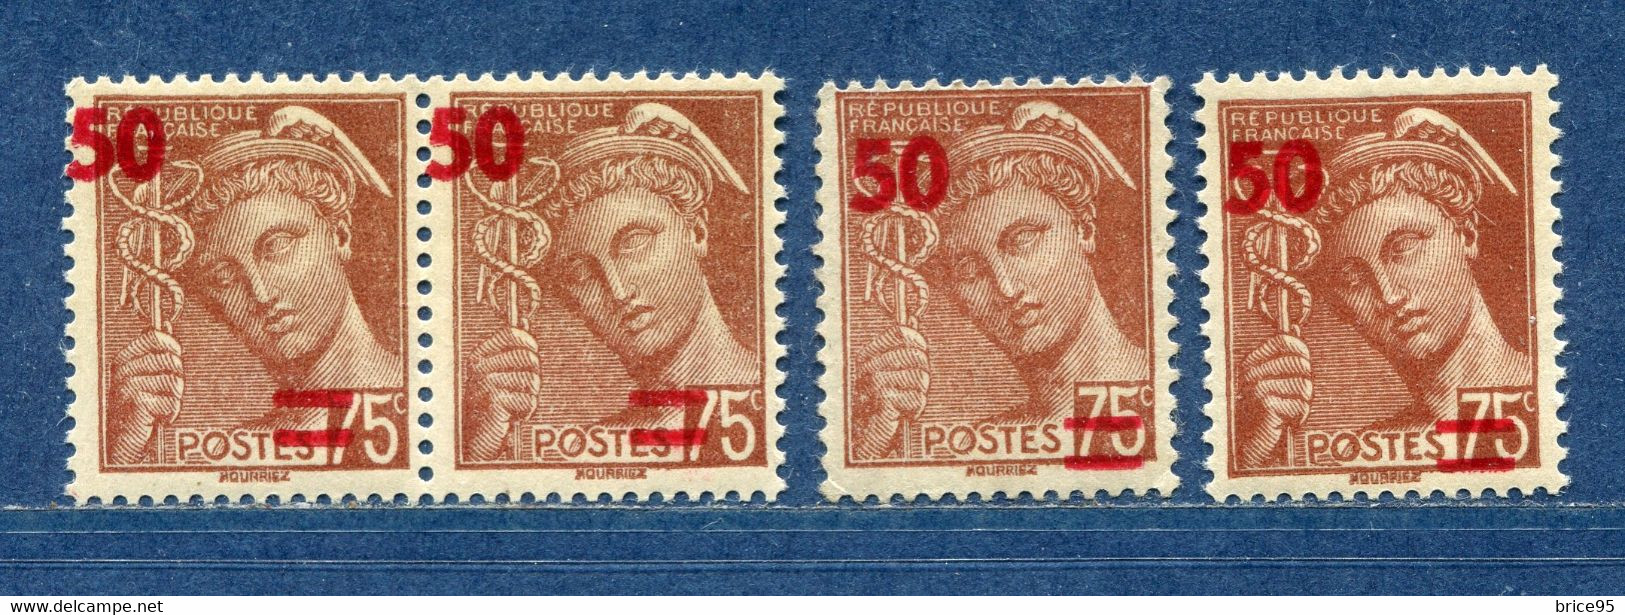 ⭐ France - Variété - YT N° 477 - Couleurs - Pétouilles - Neuf Sans Charnière - 1940 ⭐ - Unused Stamps